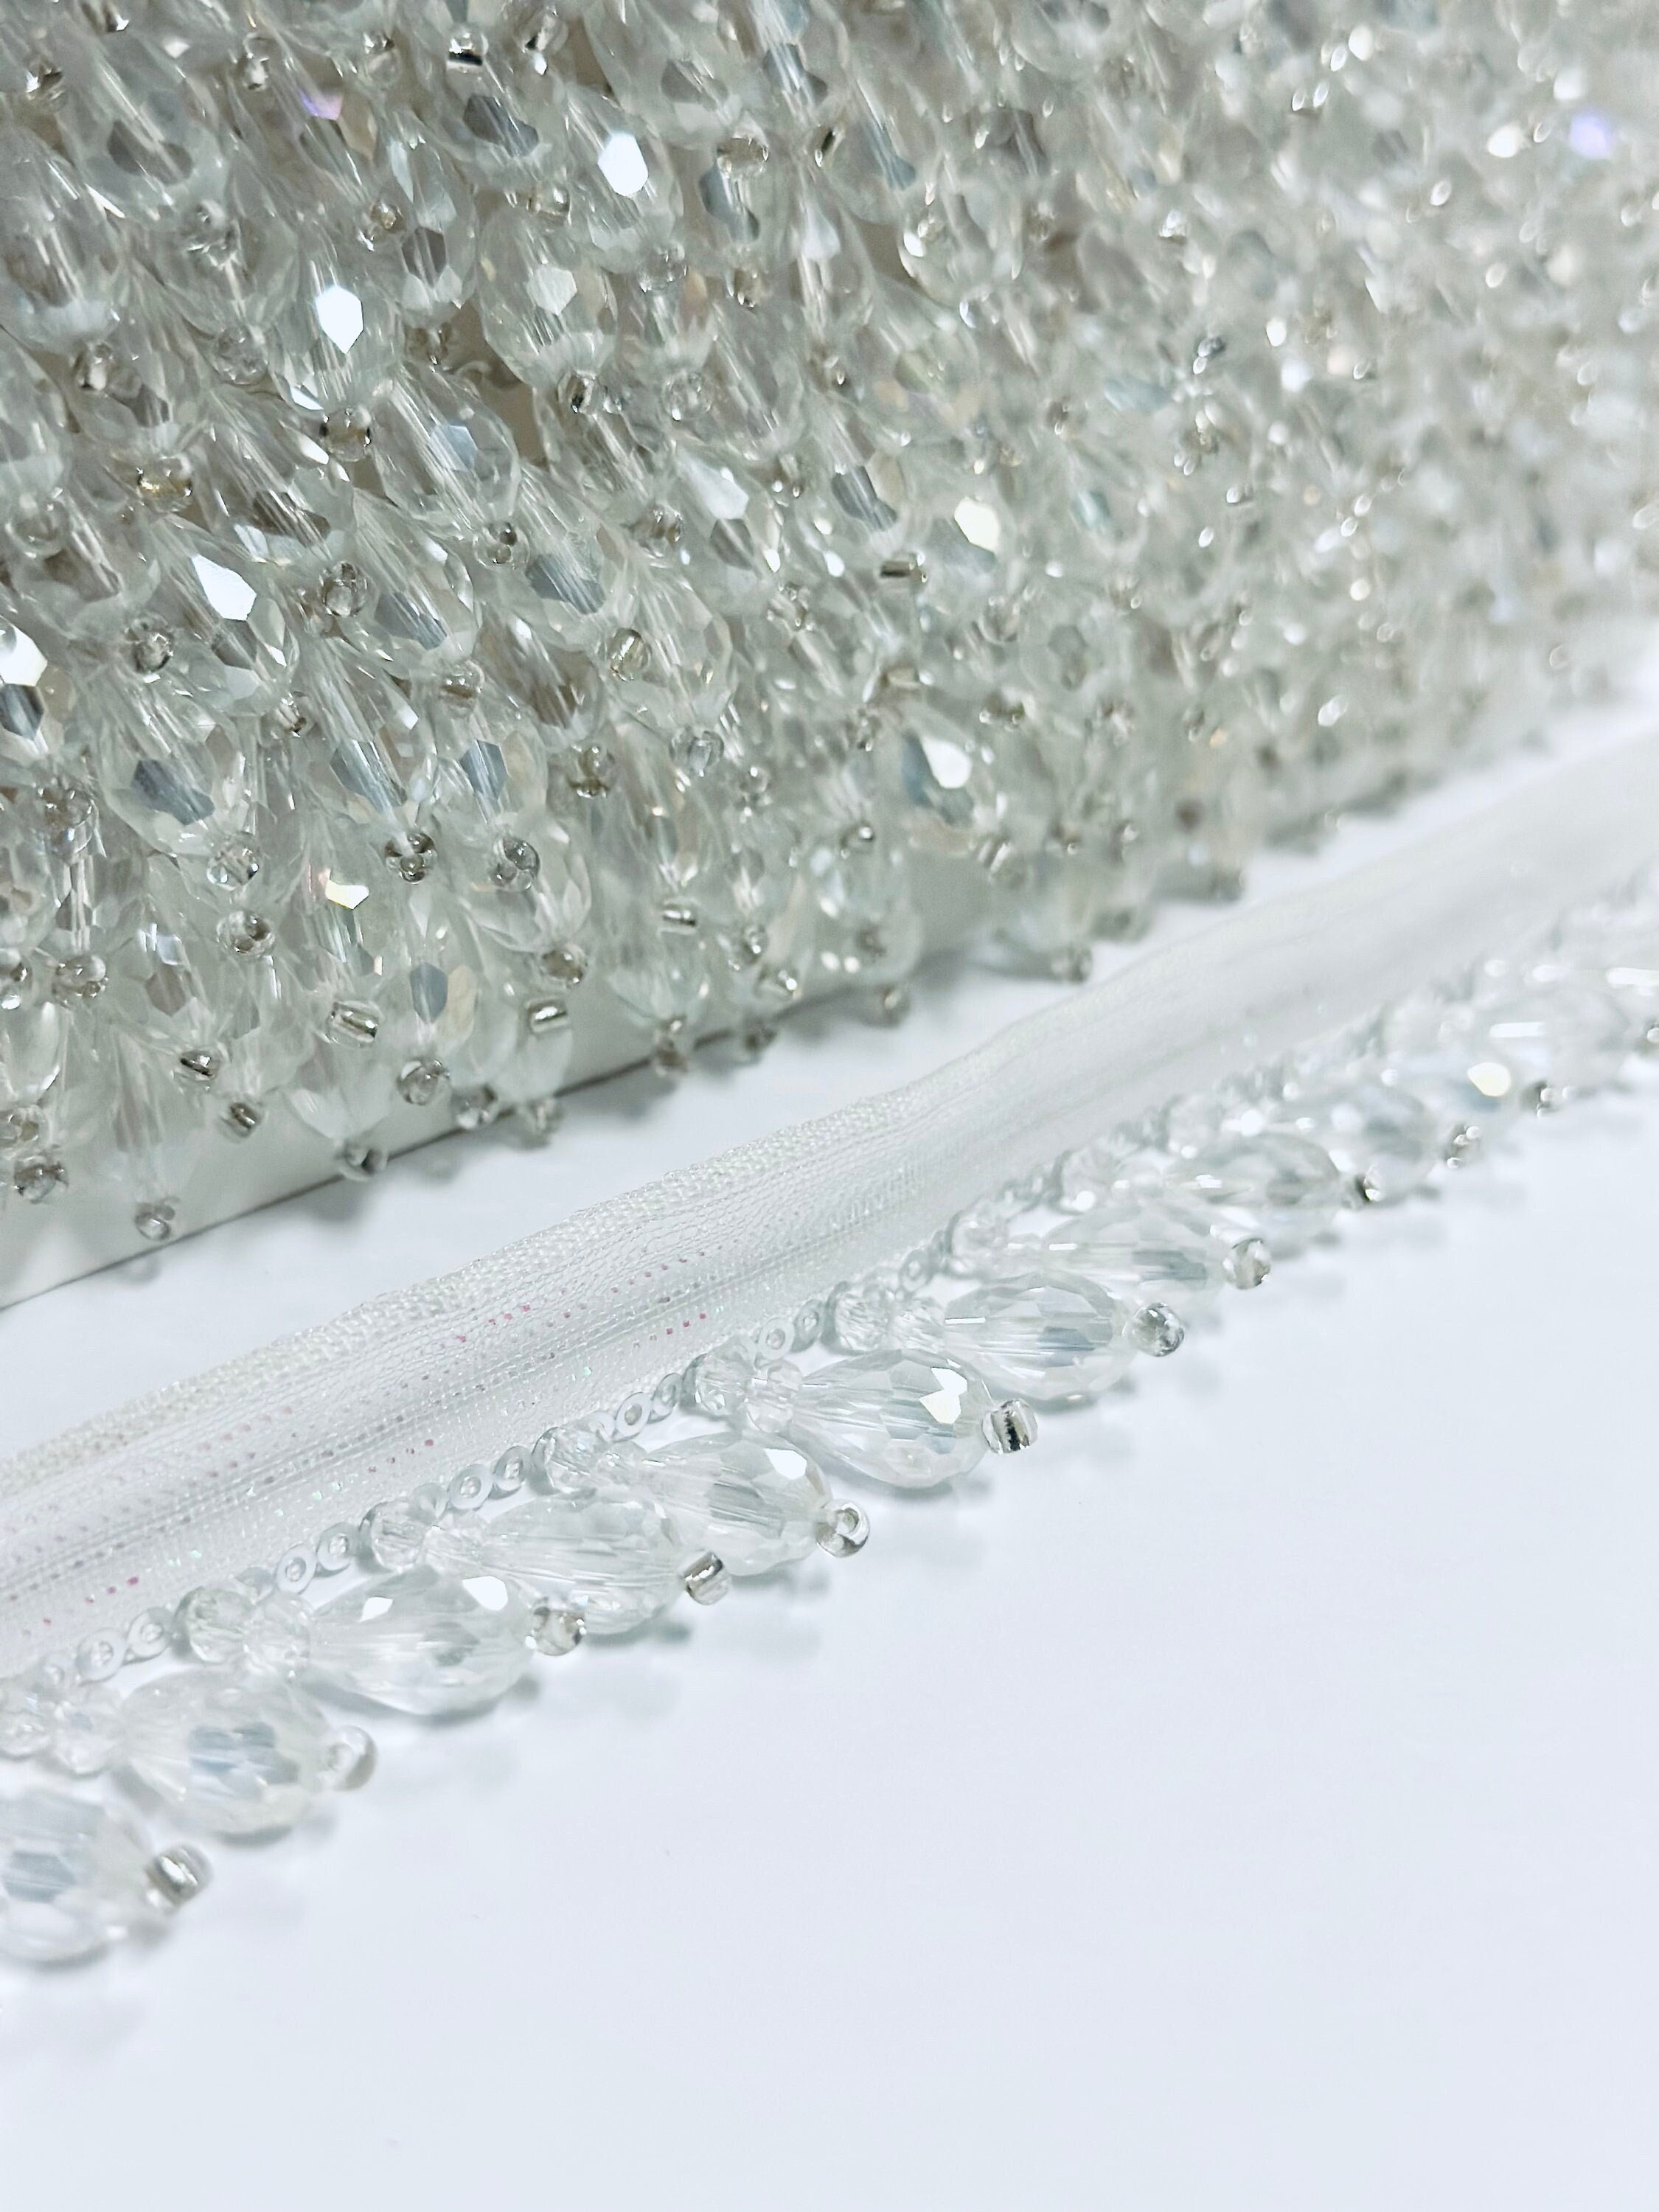 100 Sew on Crystal Rhinestones With Claw,mini Crystal Gems Sewing